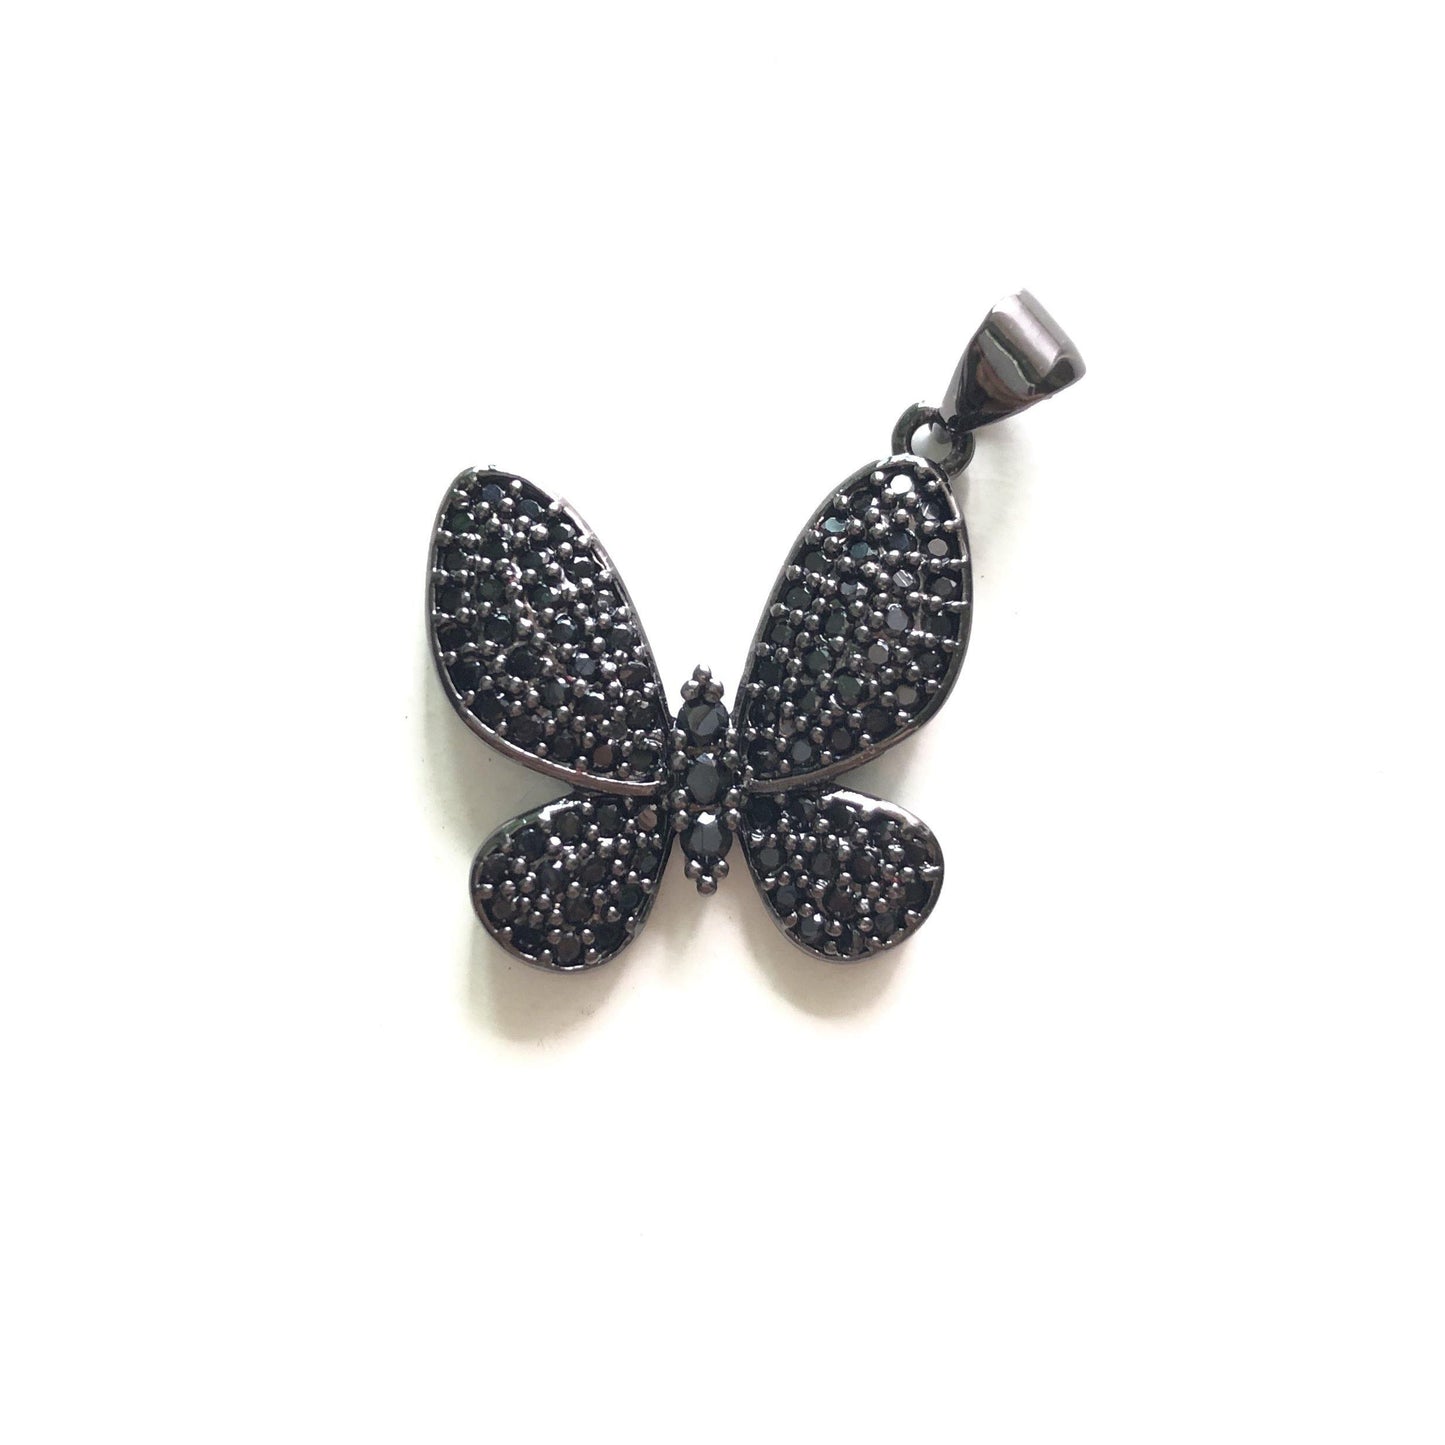 10pcs/lot 20*20mm CZ Paved Butterfly Charms Black on Black CZ Paved Charms Butterflies Charms Beads Beyond